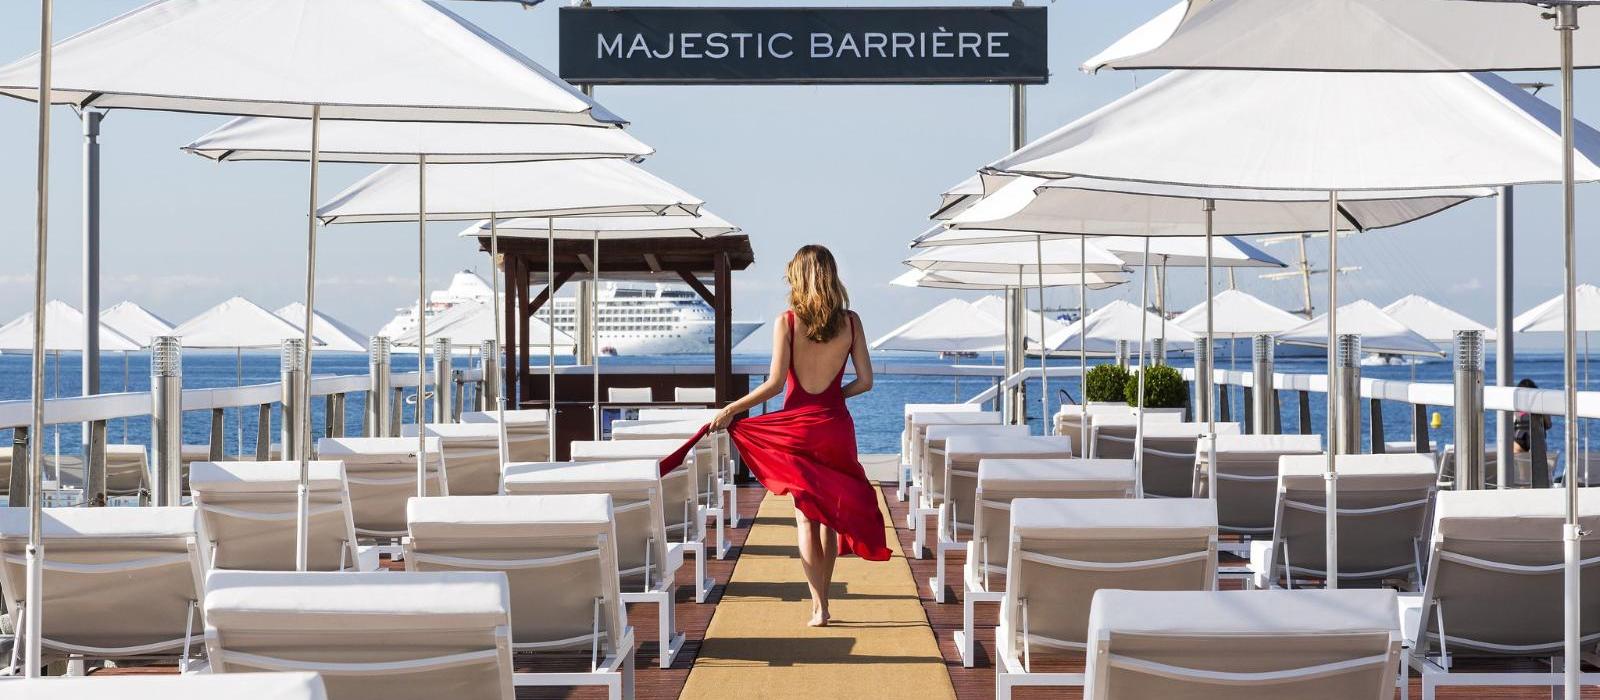 巴里耶尔马杰斯迪克酒店(Hotel Barriere Le Majestic Cannes) La Plage餐厅图片  www.lhw.cn